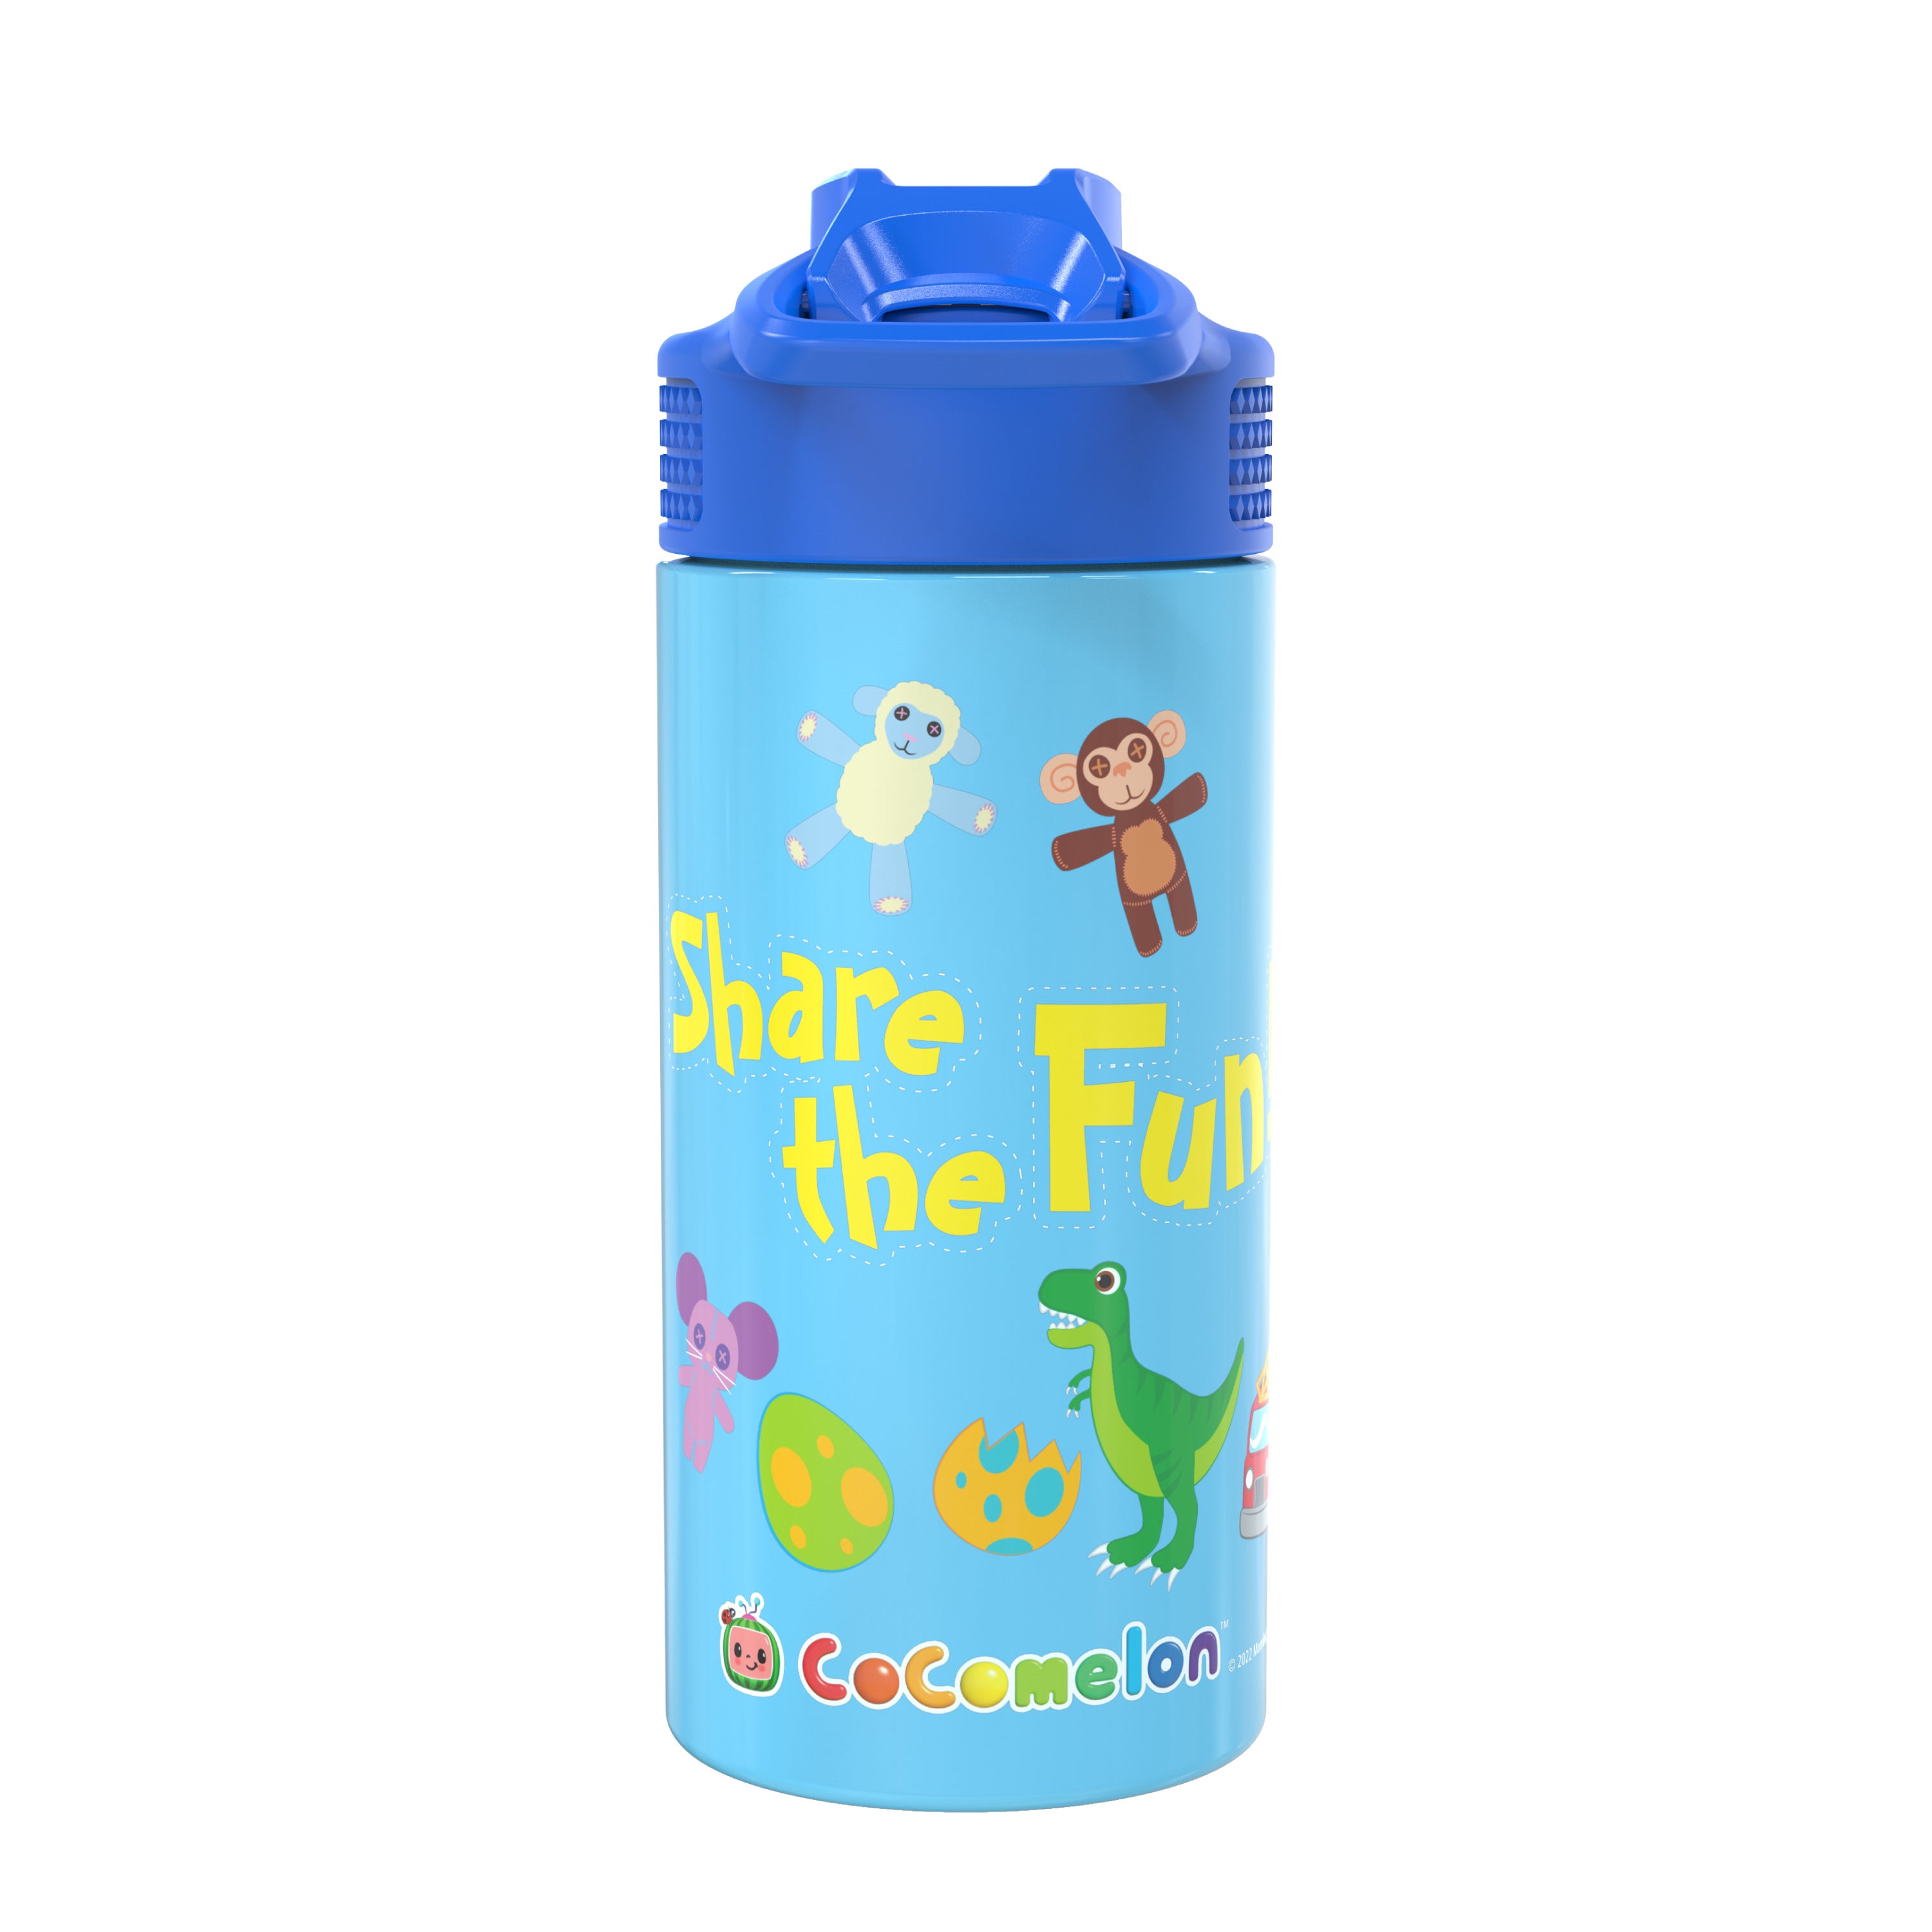  Lehoo Castle Kids Insulated Water Bottle, 14oz Kids